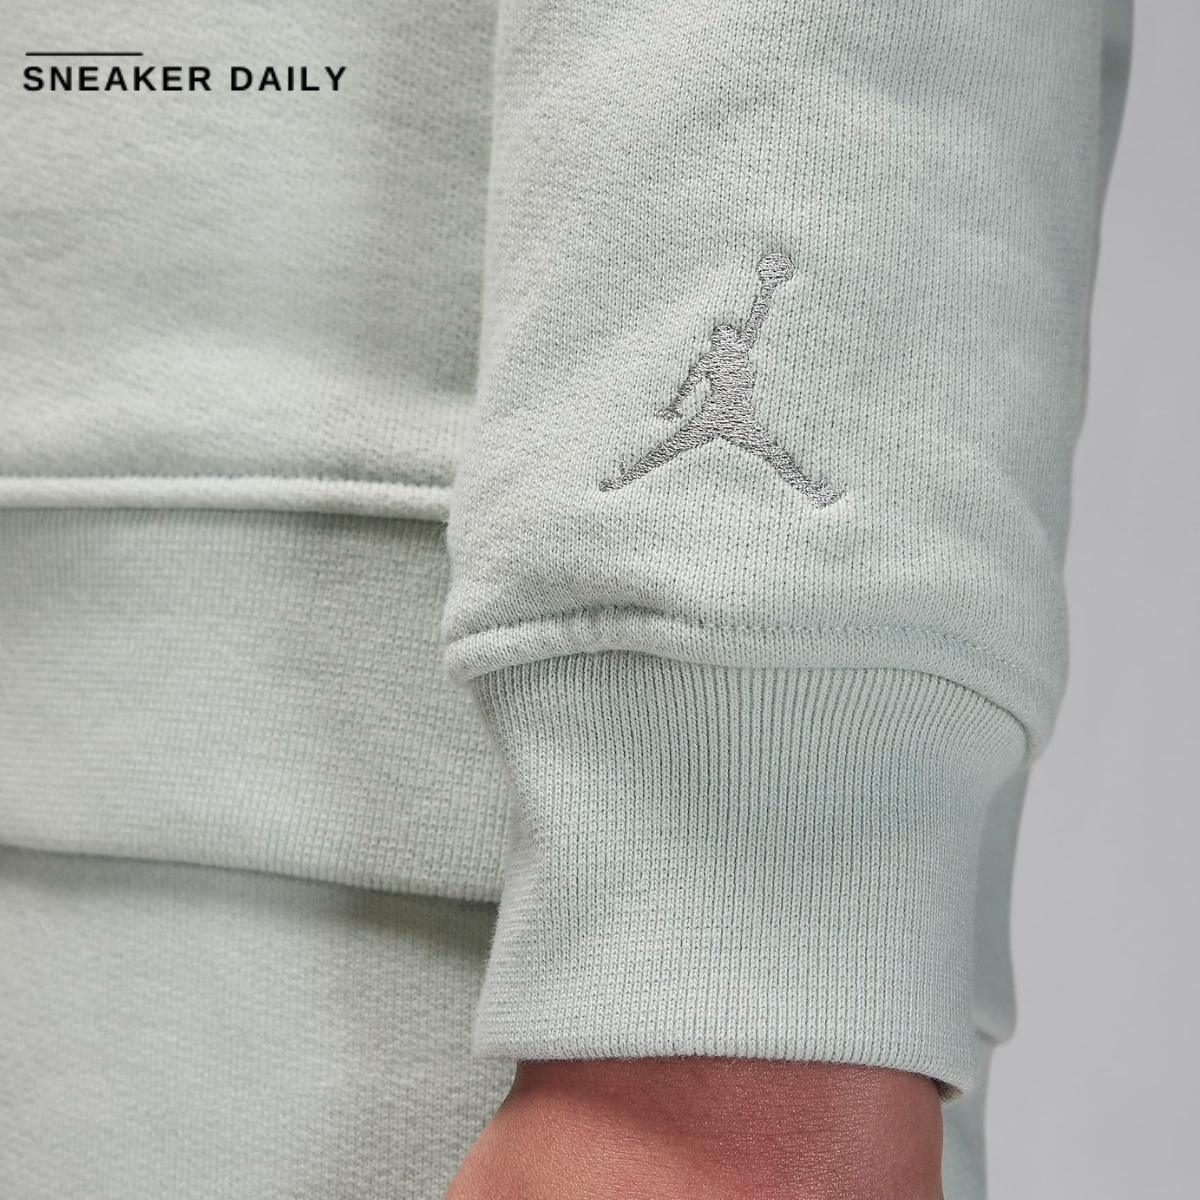 Air Jordan Wordmark Men's Fleece Crewneck Sweatshirt